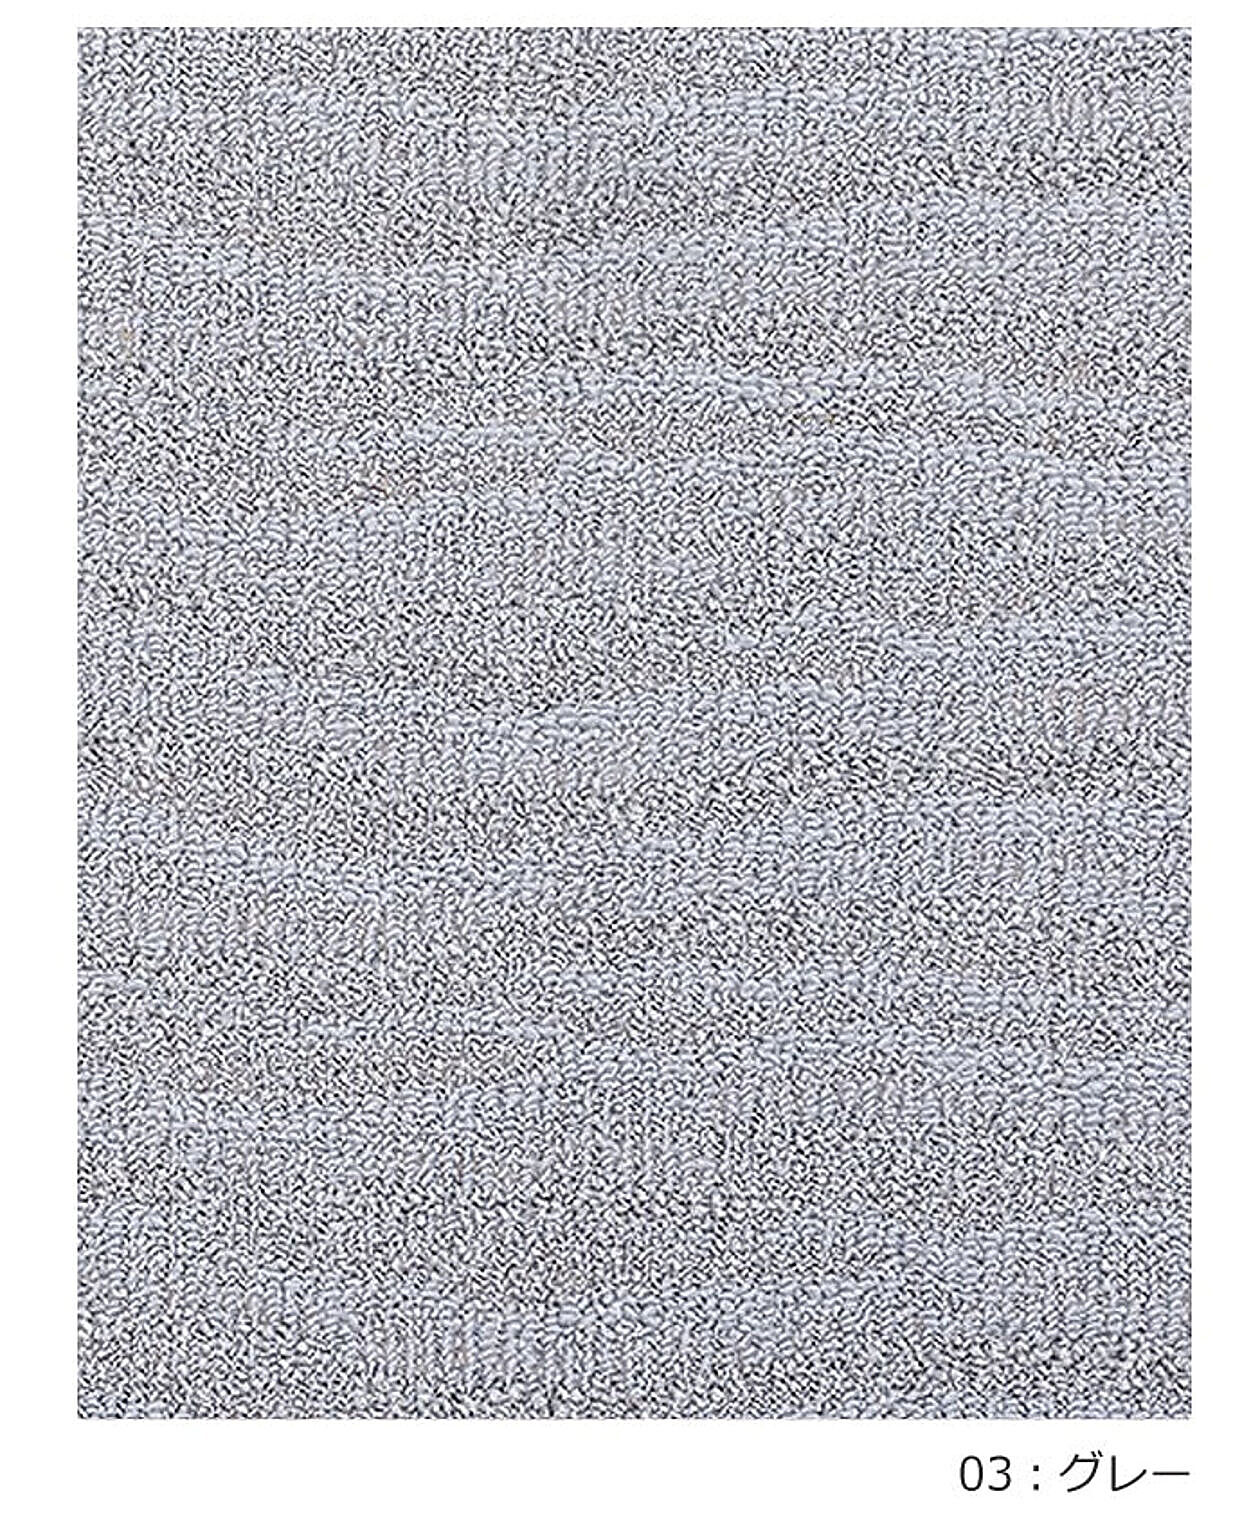 ラグ ラグマット 絨毯 日本製 カーペット 約190×240cm 北欧 デザイン 防ダニ 抗菌 prevell プレーベル ポート 引っ越し 新生活